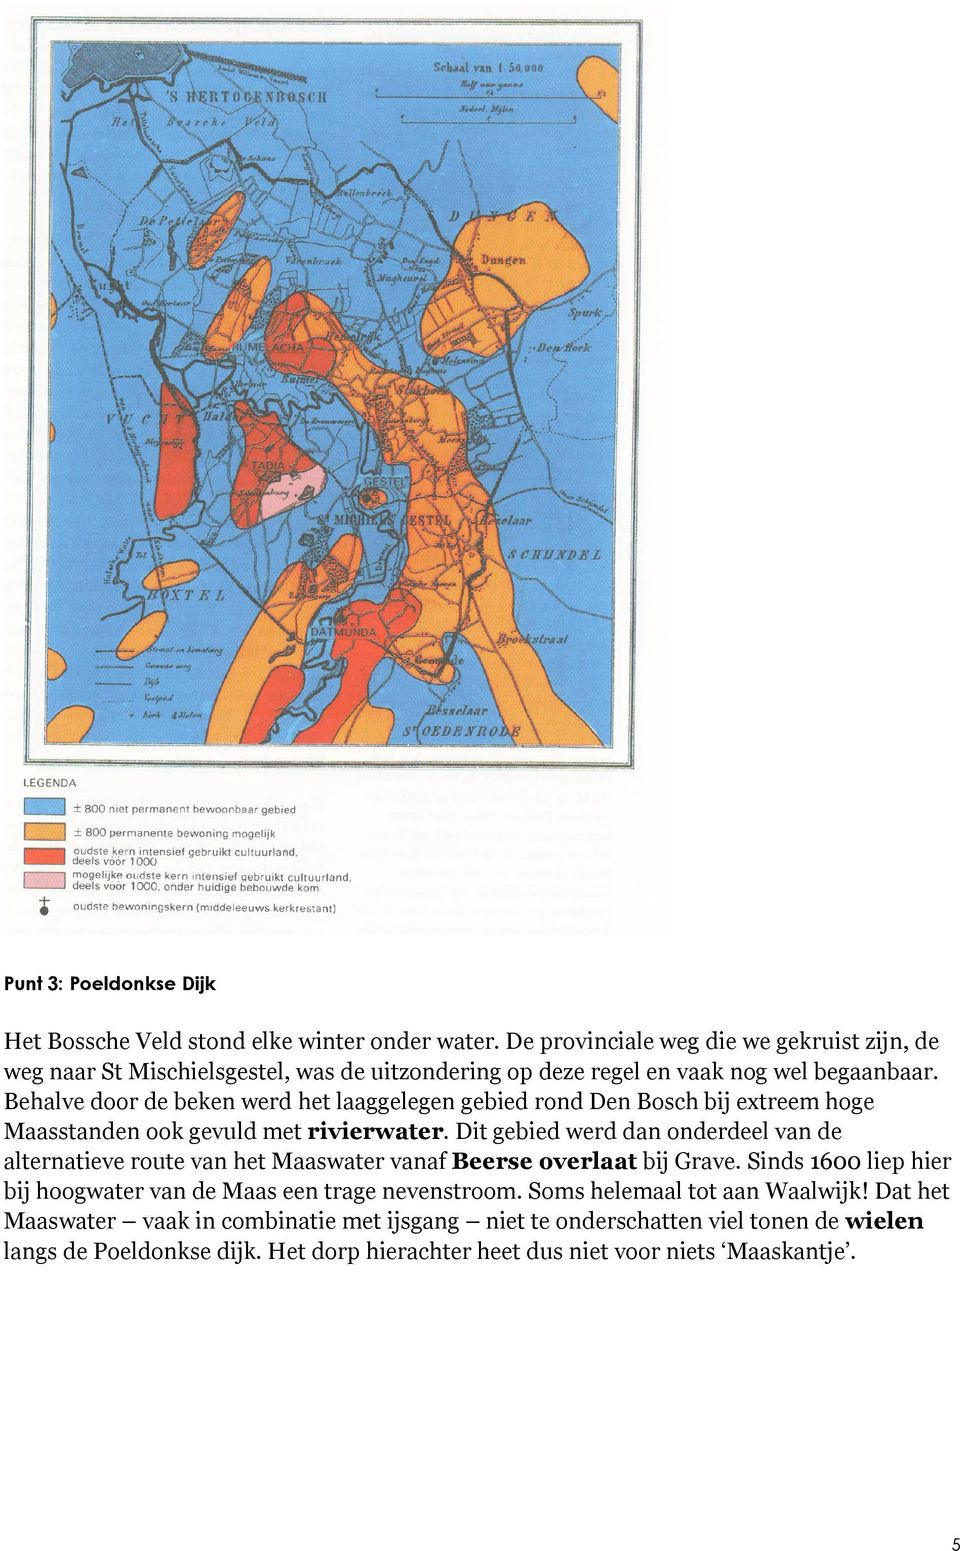 Behalve door de beken werd het laaggelegen gebied rond Den Bosch bij extreem hoge Maasstanden ook gevuld met rivierwater.